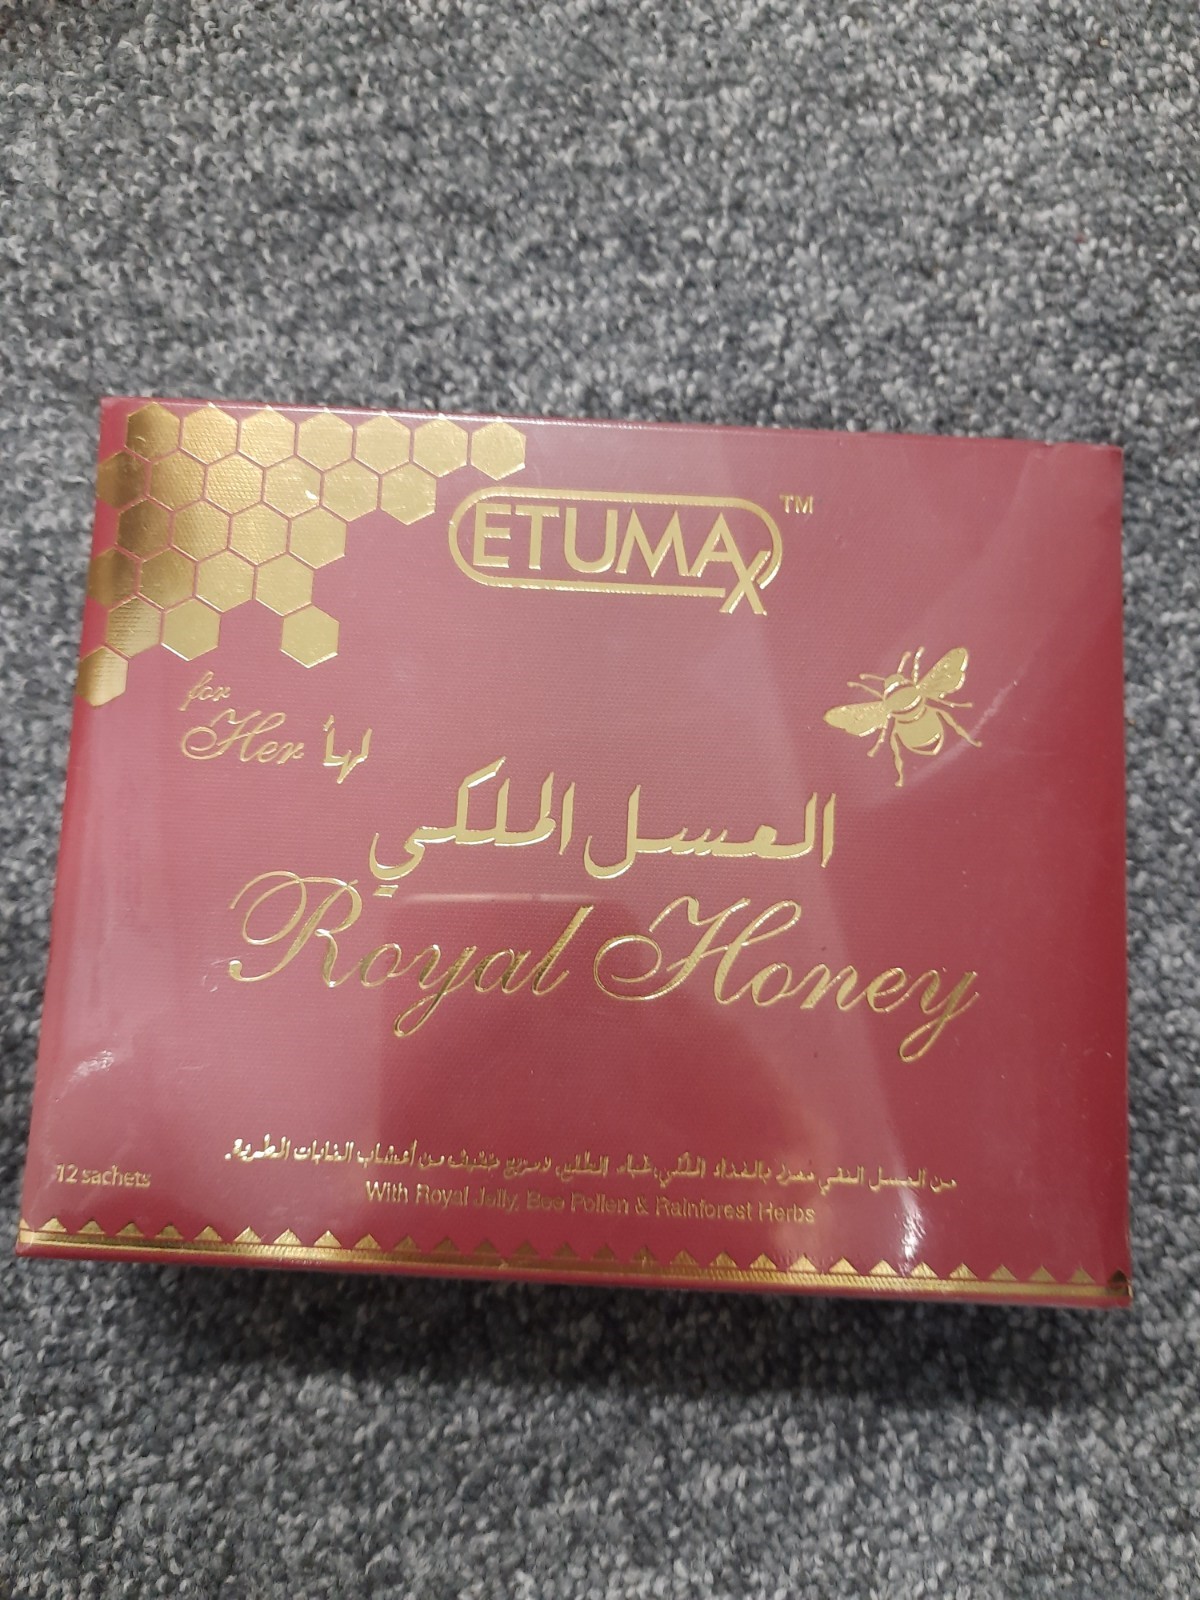 Billede af det ulovlige produkt: Etumax Royal Honey for Her